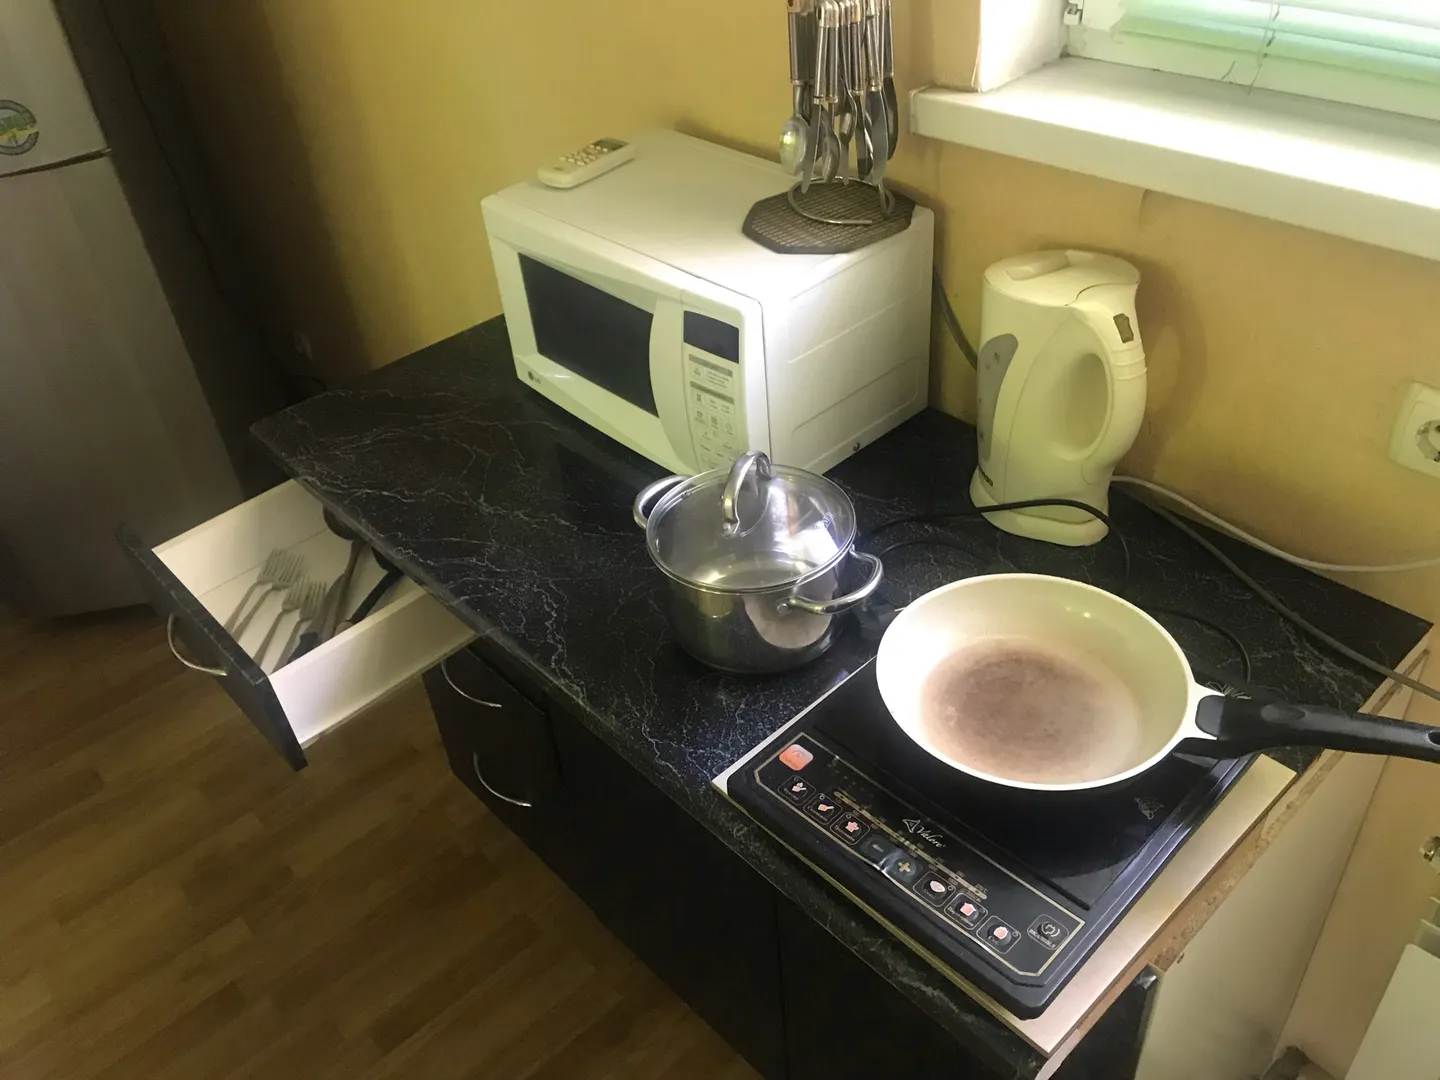 В кухонной зоне: микроволновая печь, индукционная лита с кастрюлей и сковородой, электрокипятильник, ложки, вилки, холодильник